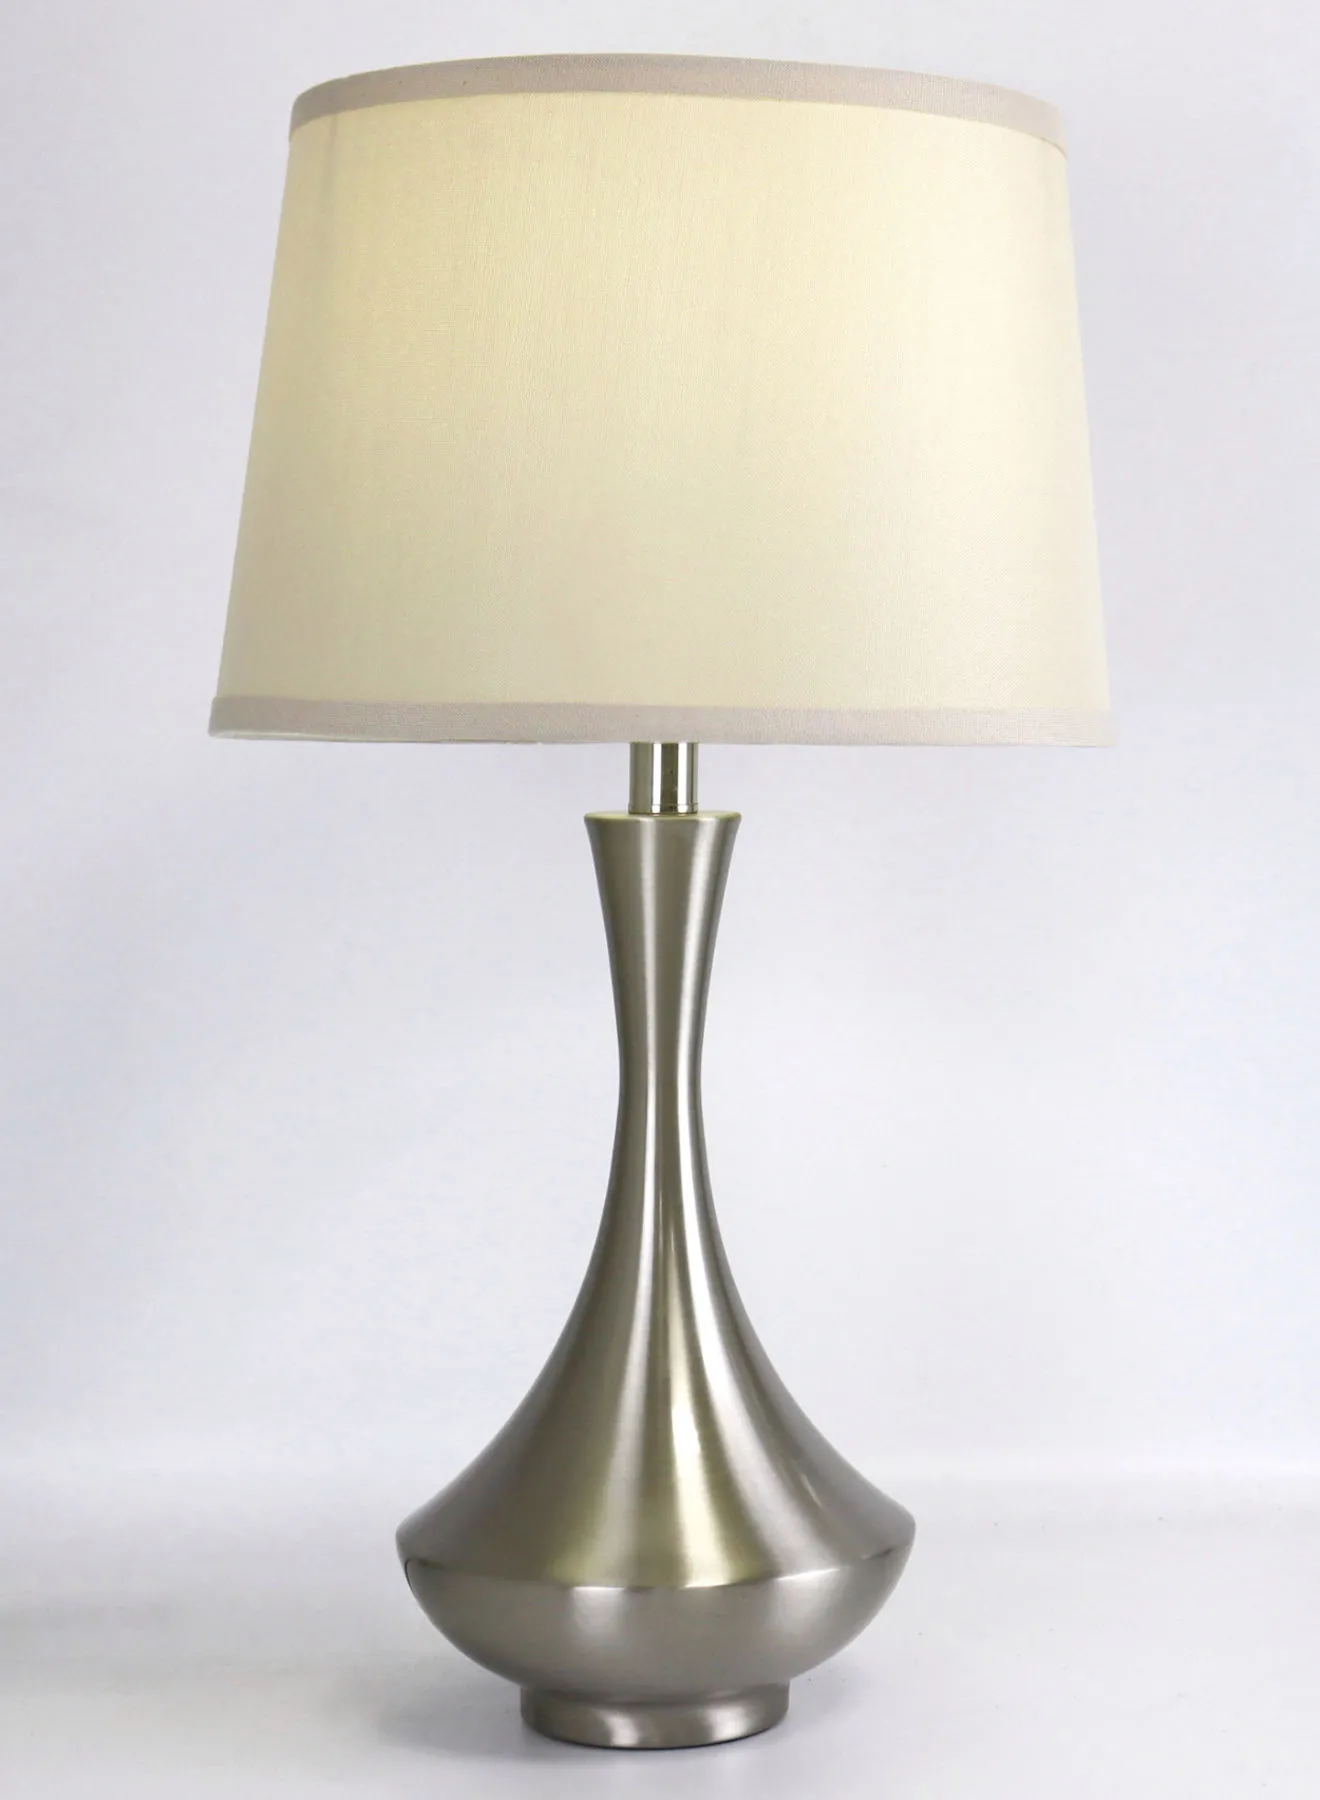 مصباح طاولة زجاجي بتصميم عصري من ebb & flow مادة فاخرة فريدة من نوعها ذات جودة عالية للمنزل الأنيق RSN71045 الساتان النيكل 13 × 23.6